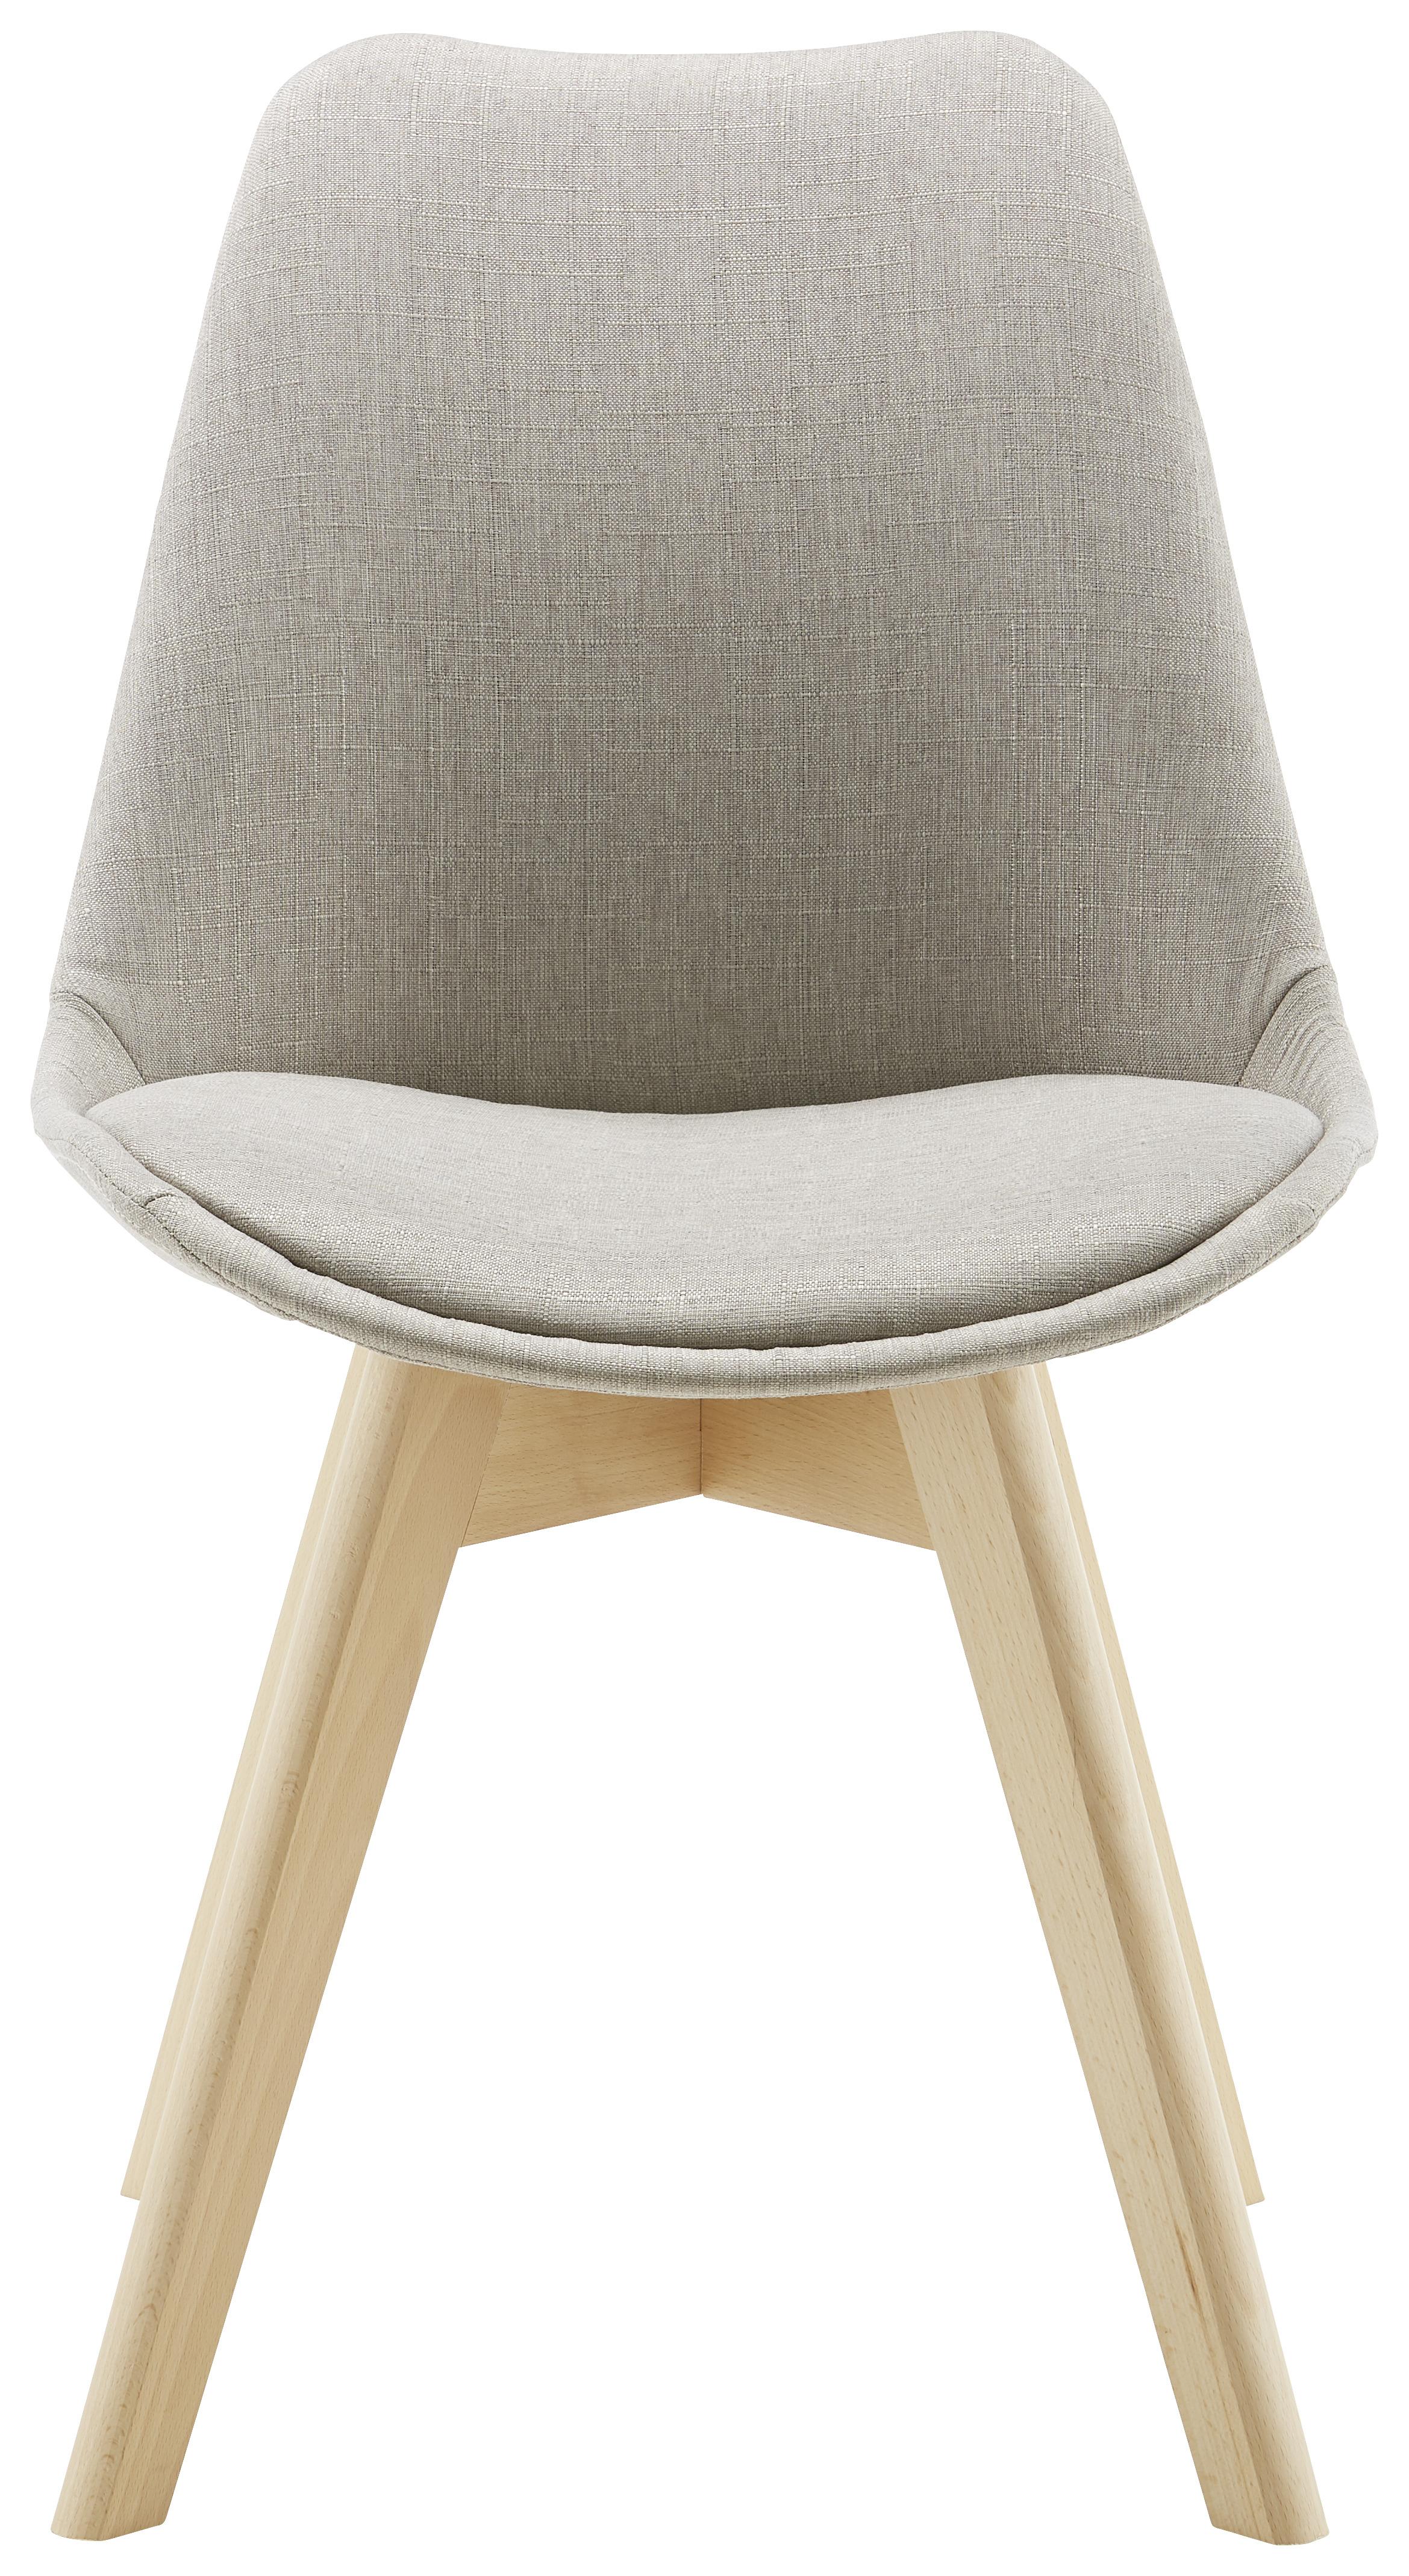 Jídelní Židle Rocksi - světle šedá/barvy buku, Moderní, dřevo/textil (48/82,5/43cm) - Modern Living